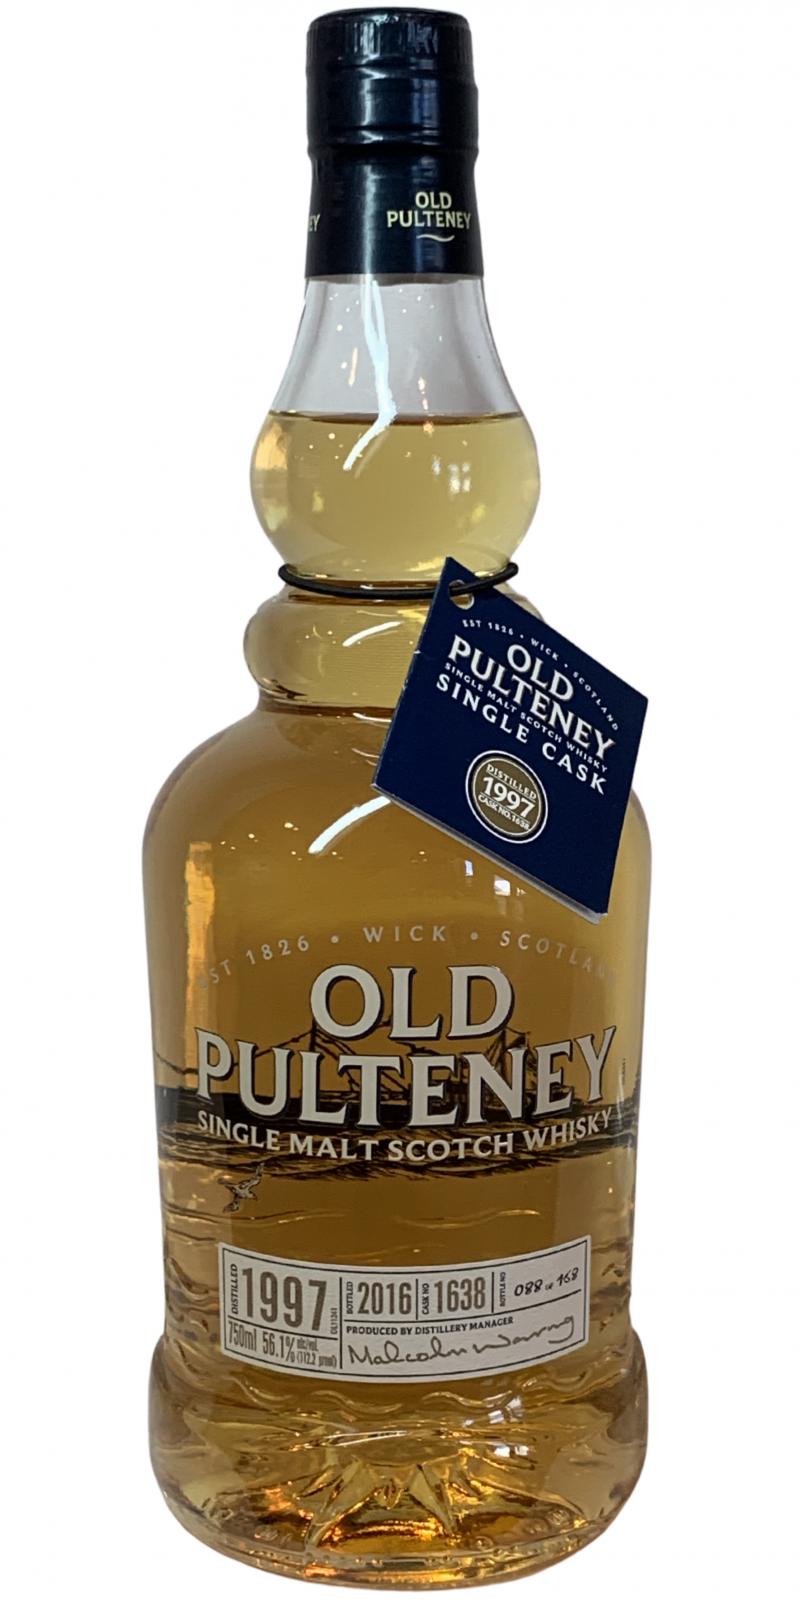 Old Pulteney 1997 Single Cask #1638 56.1% 750ml